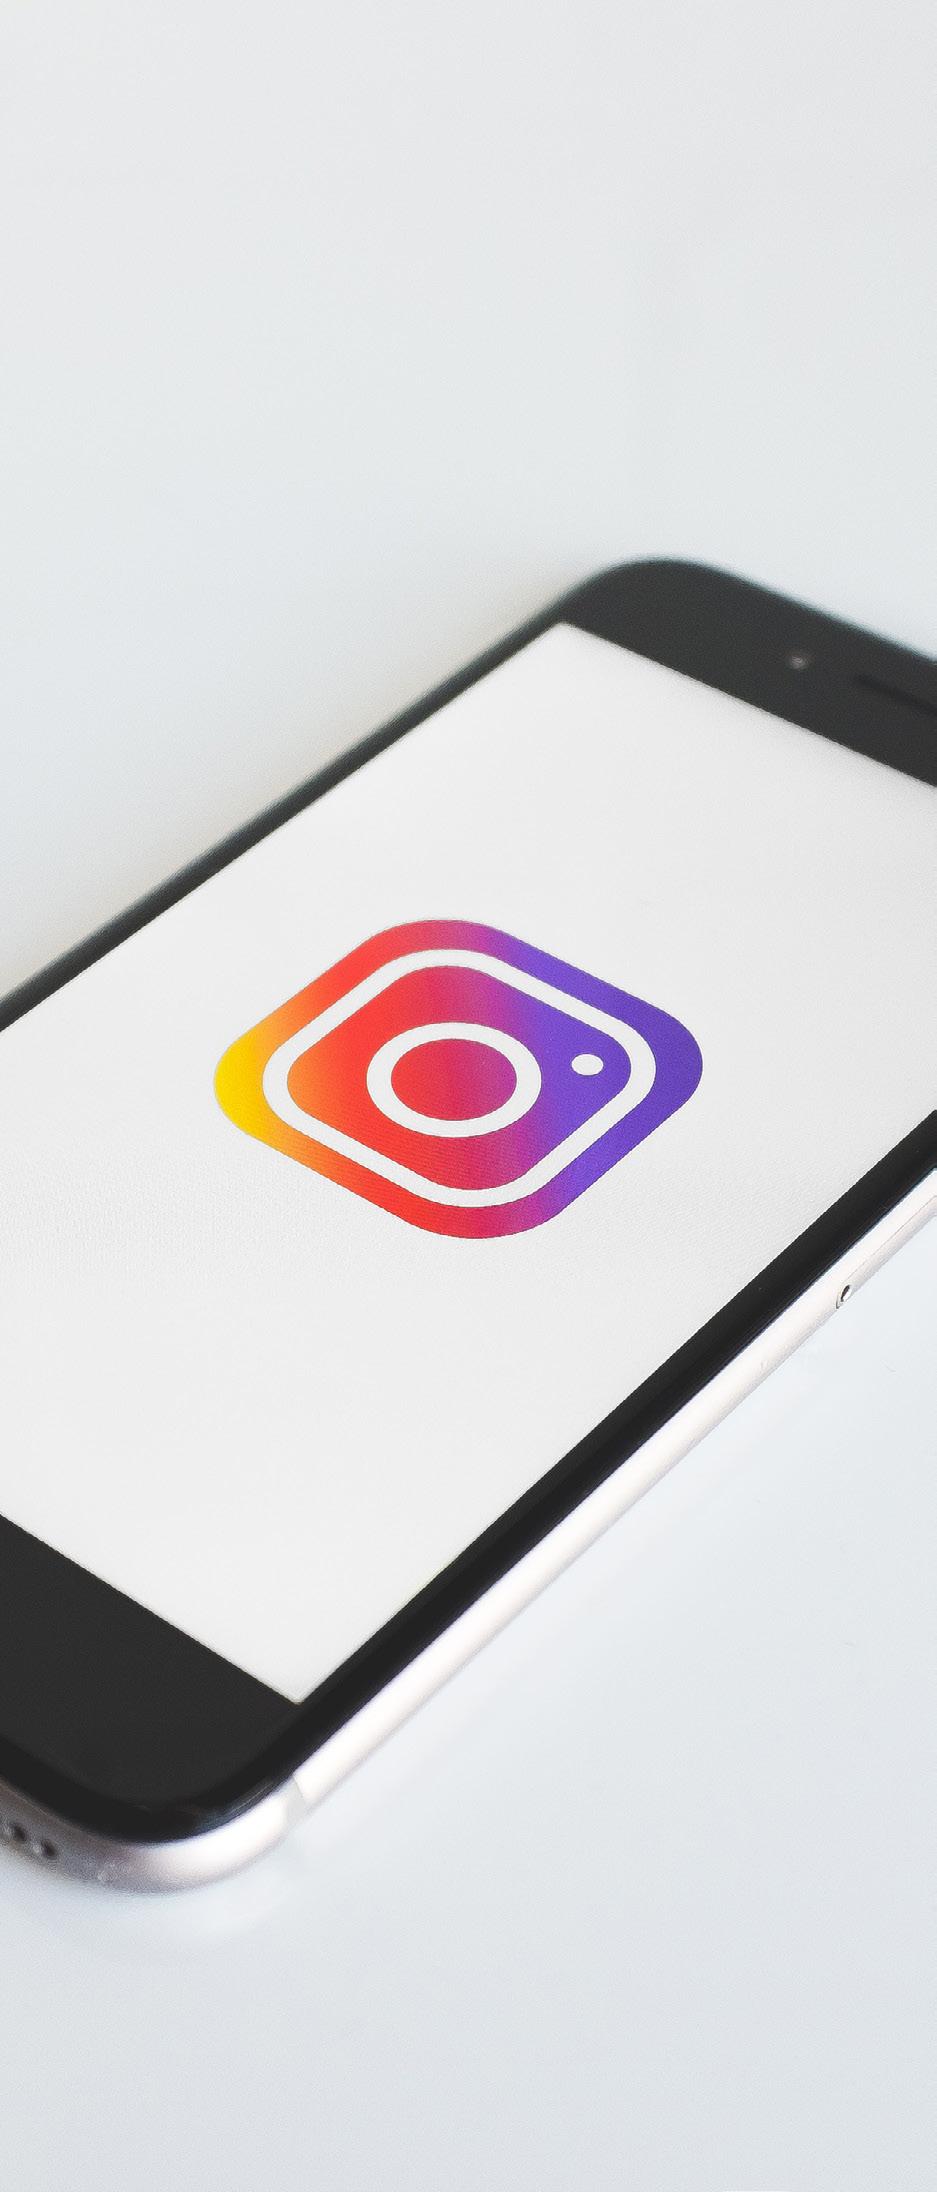 Instagram jako wiodące źródło W badanym okresie zaobserwowaliśmy wzrost liczby wzmianek oraz użytkowników Instagrama w całej Europie.